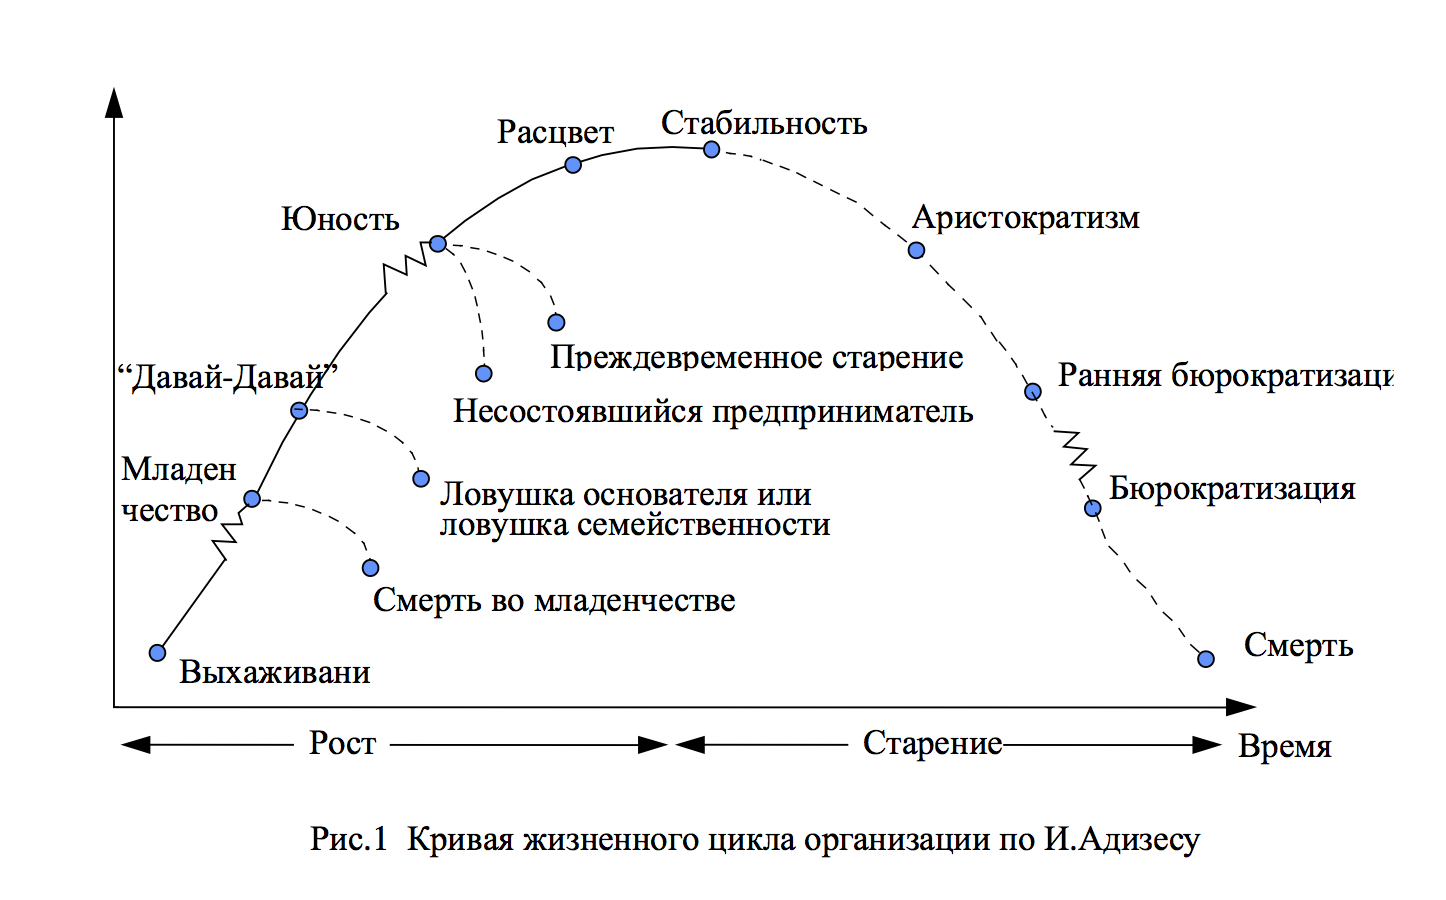 Модели управление жизненного цикла. Адизес модель жизненного цикла организации. Жизненный цикл Грейнера и Адизеса. Теория жизненных циклов организации и.Адизеса. Фазы жизненного цикла компании.